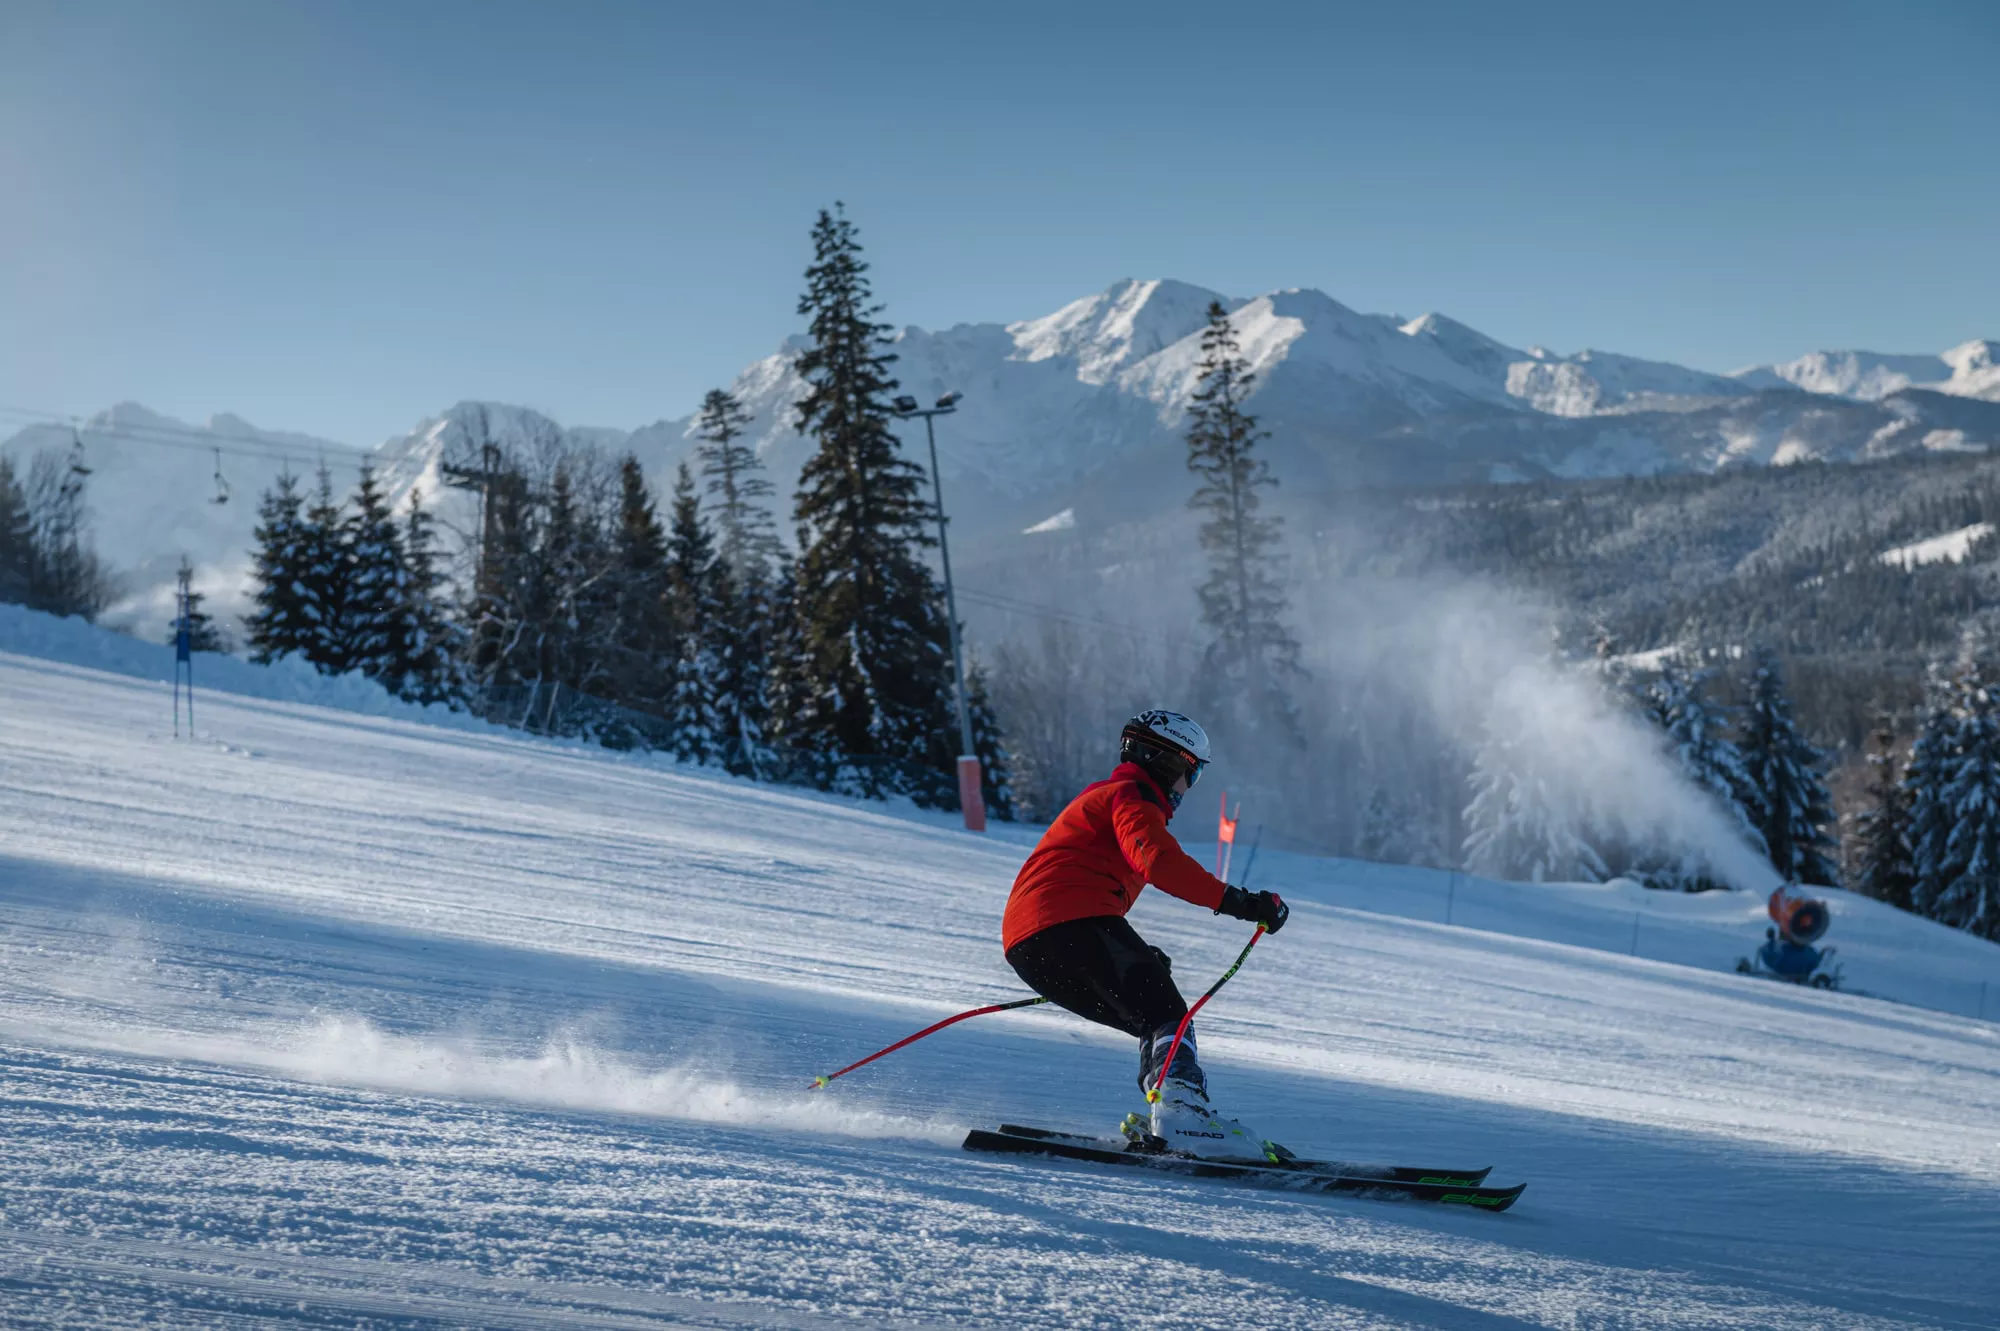 Blick auf einen Skifahrer, der die Piste hinunterfährt. In der Ferne sieht man eine Schneekanone, einen Sessellift, Bäume und die verschneite Tatra. Der Himmel ist wunderschön blau und wolkenlos.